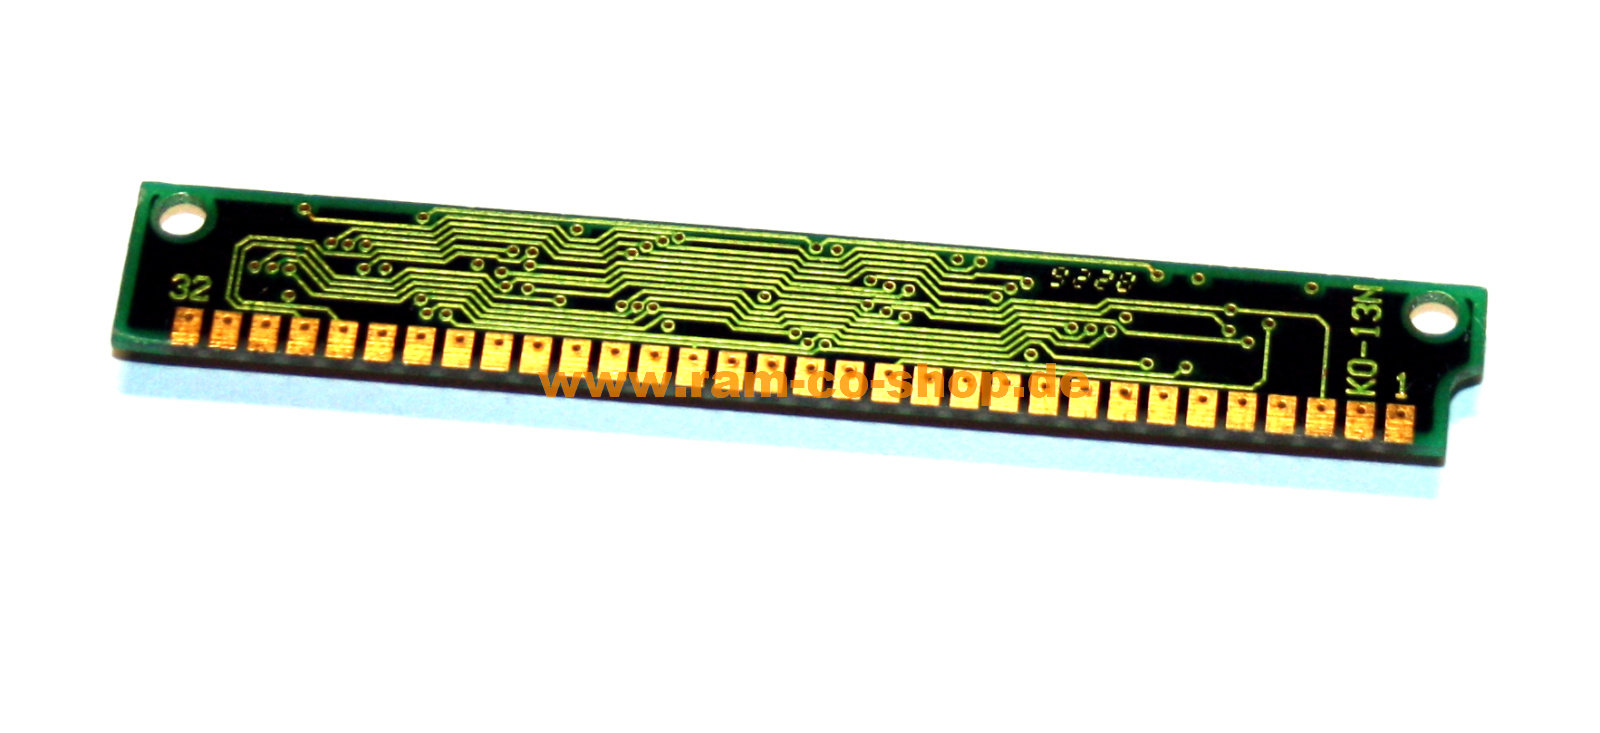 1 MB SIMM 30-pin 70 NS 3-Chip 1mx9 Chip: 2x km44c1000aj-7 + 1x km41c1000cj-7